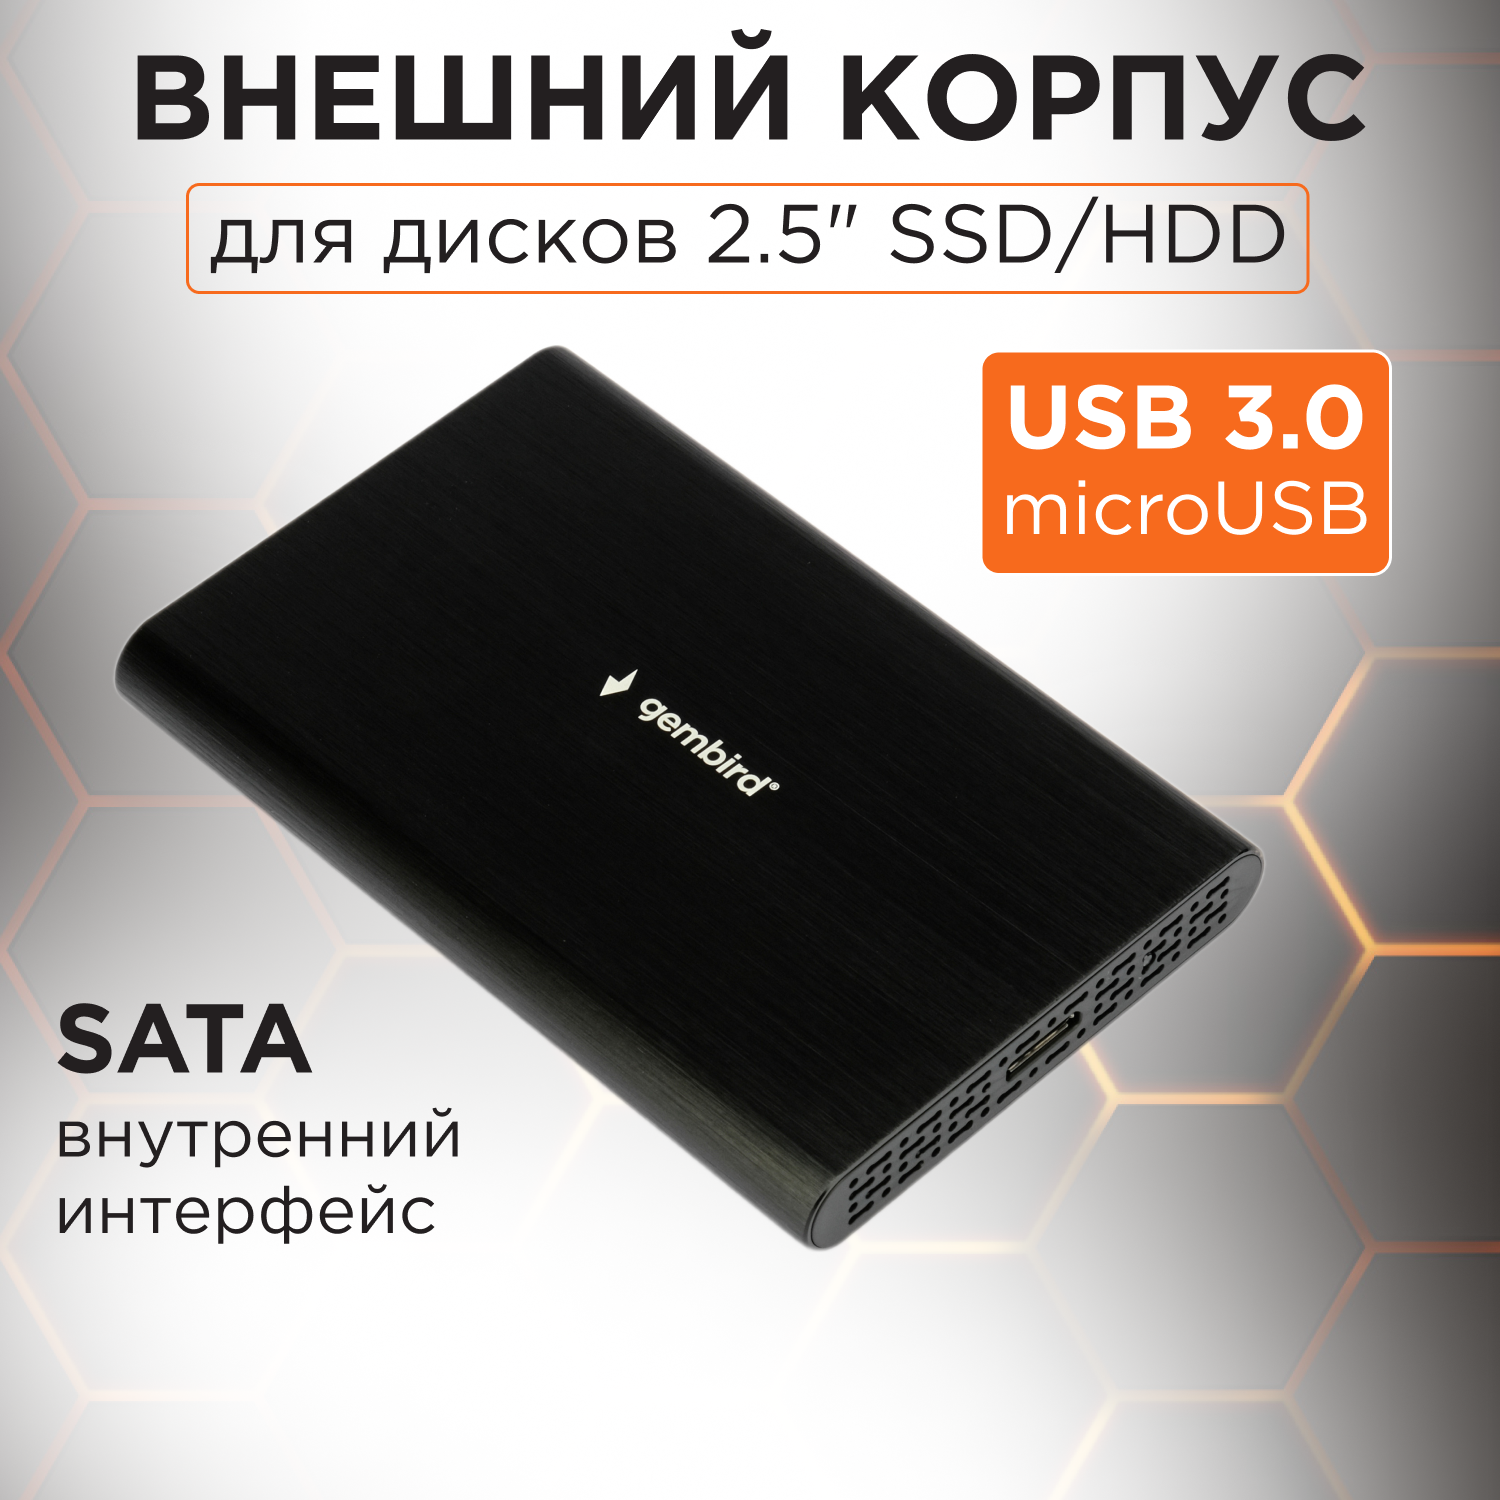 Корпус для HDD/SSD Gembird EE2-U3S-50